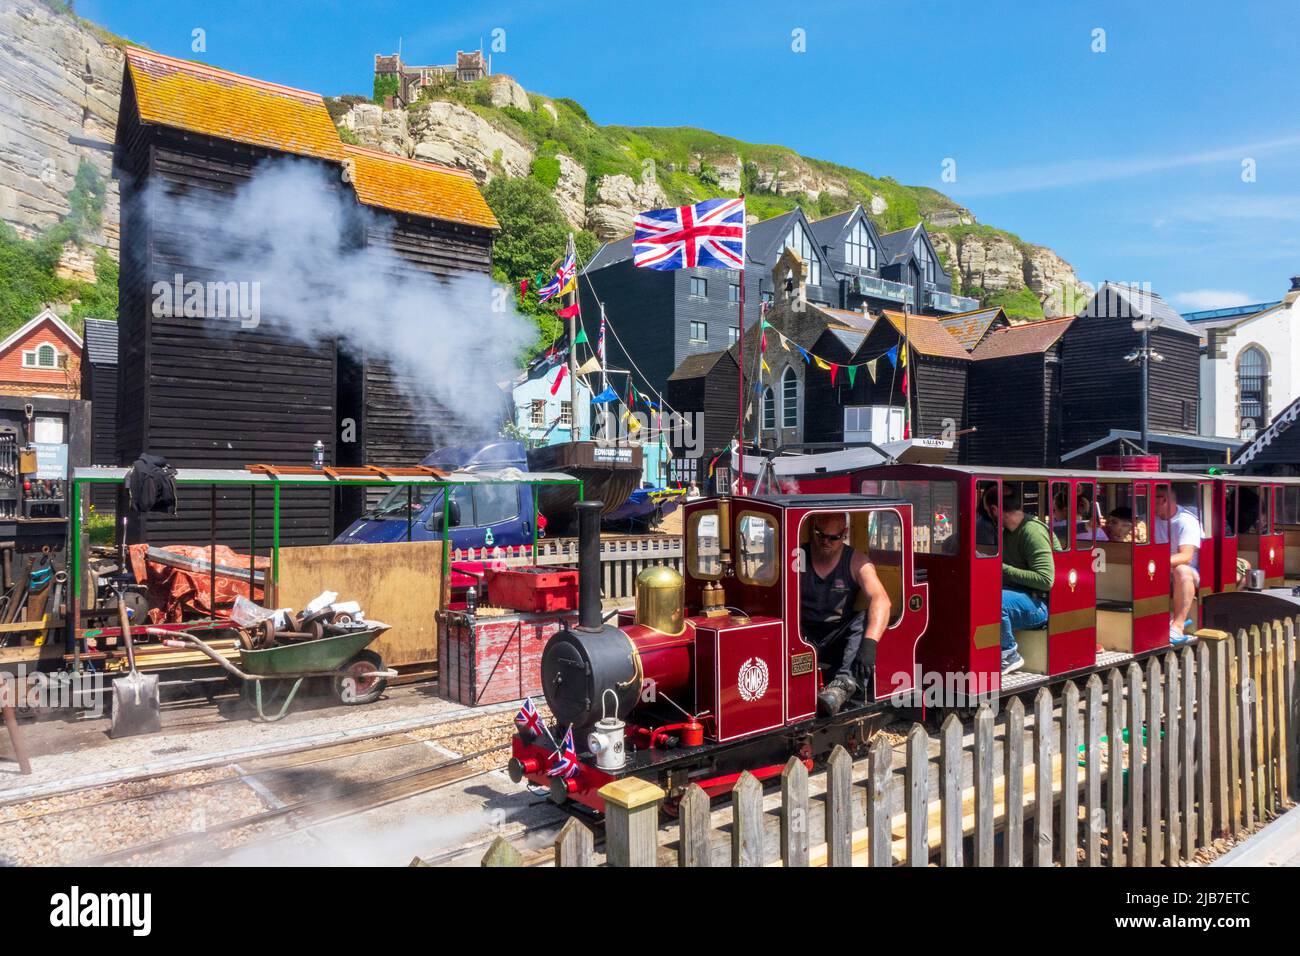 Chemin de fer miniature, Hastings, attraction touristique populaire sur le front de mer, à côté du quartier maritime des bateaux historiques et des cabanes nettes, East Sussex, Royaume-Uni Banque D'Images